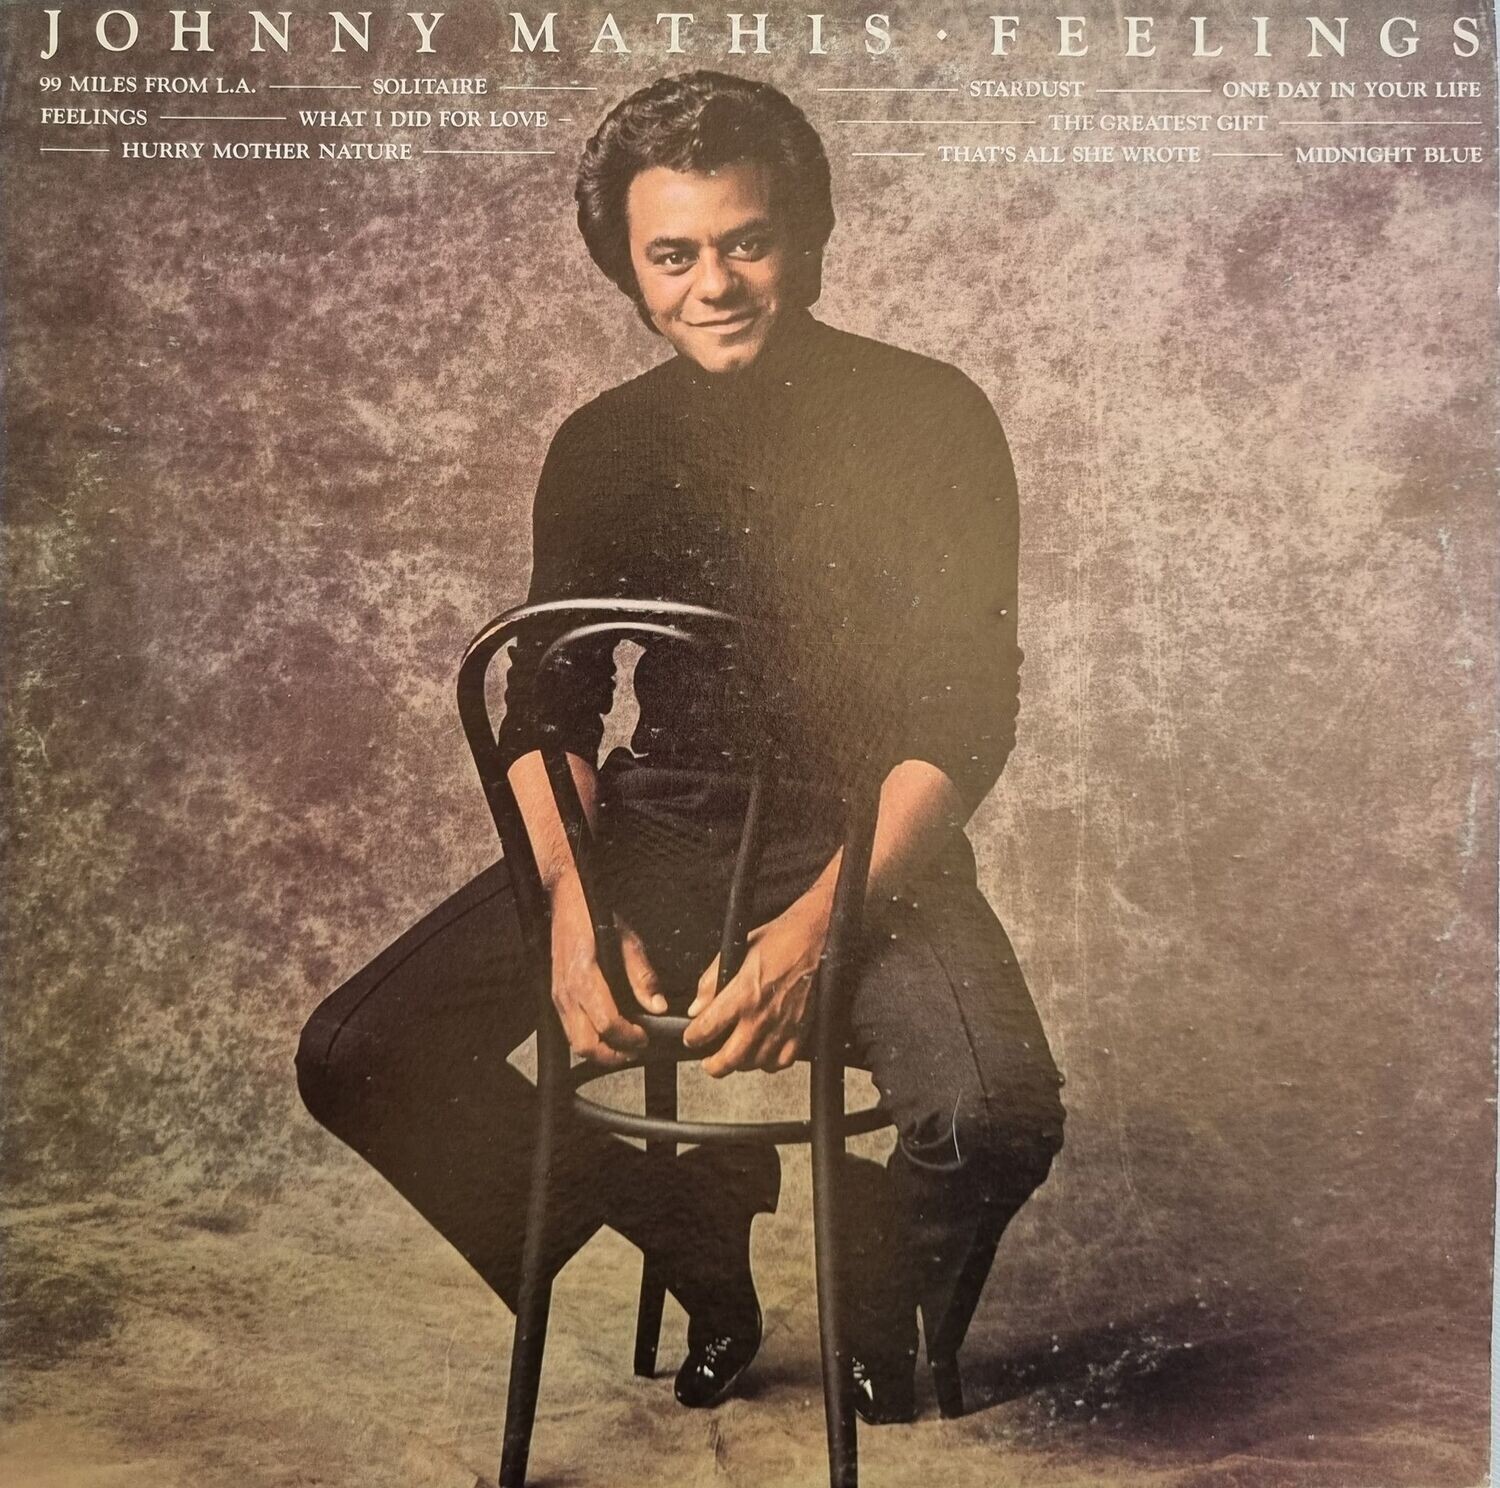 Johnny Mathis – Feelings (1975)